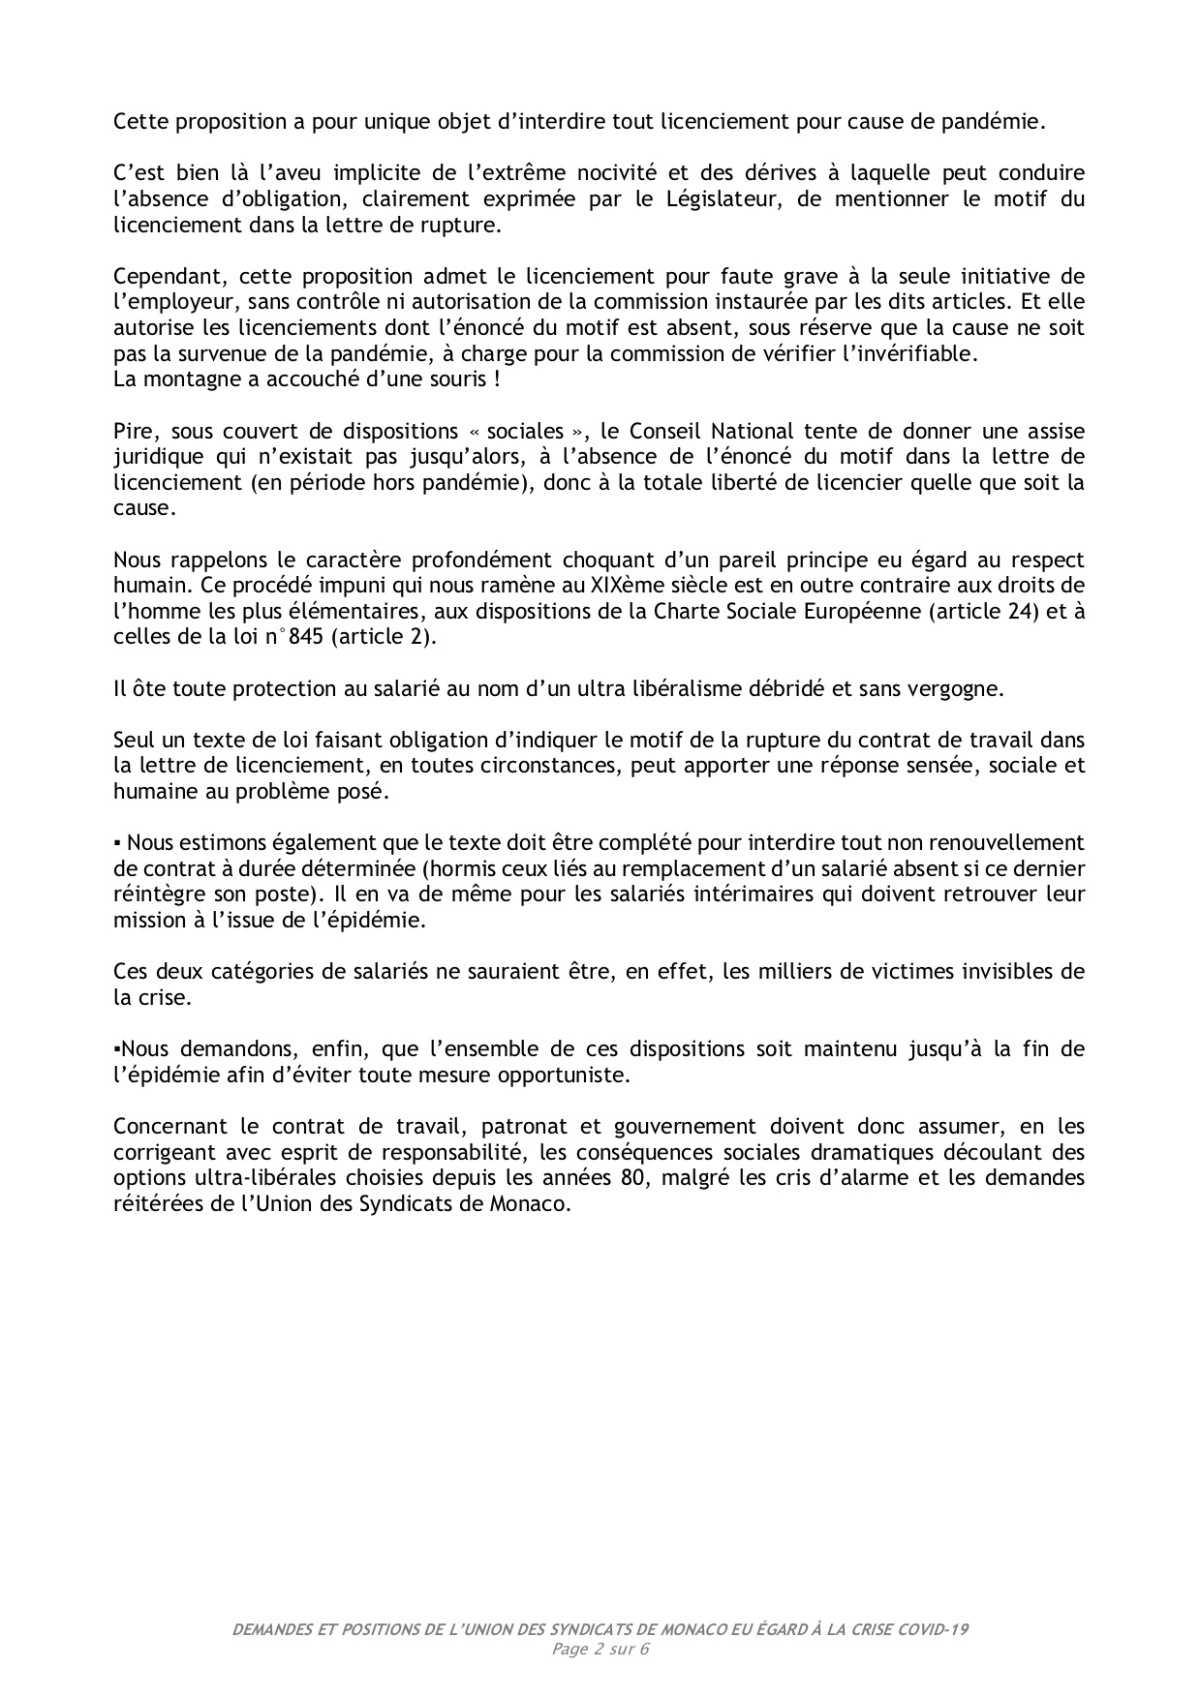 Demandes et positions de l'Union des Syndicats de Monaco eu égard à la crise Covid-19